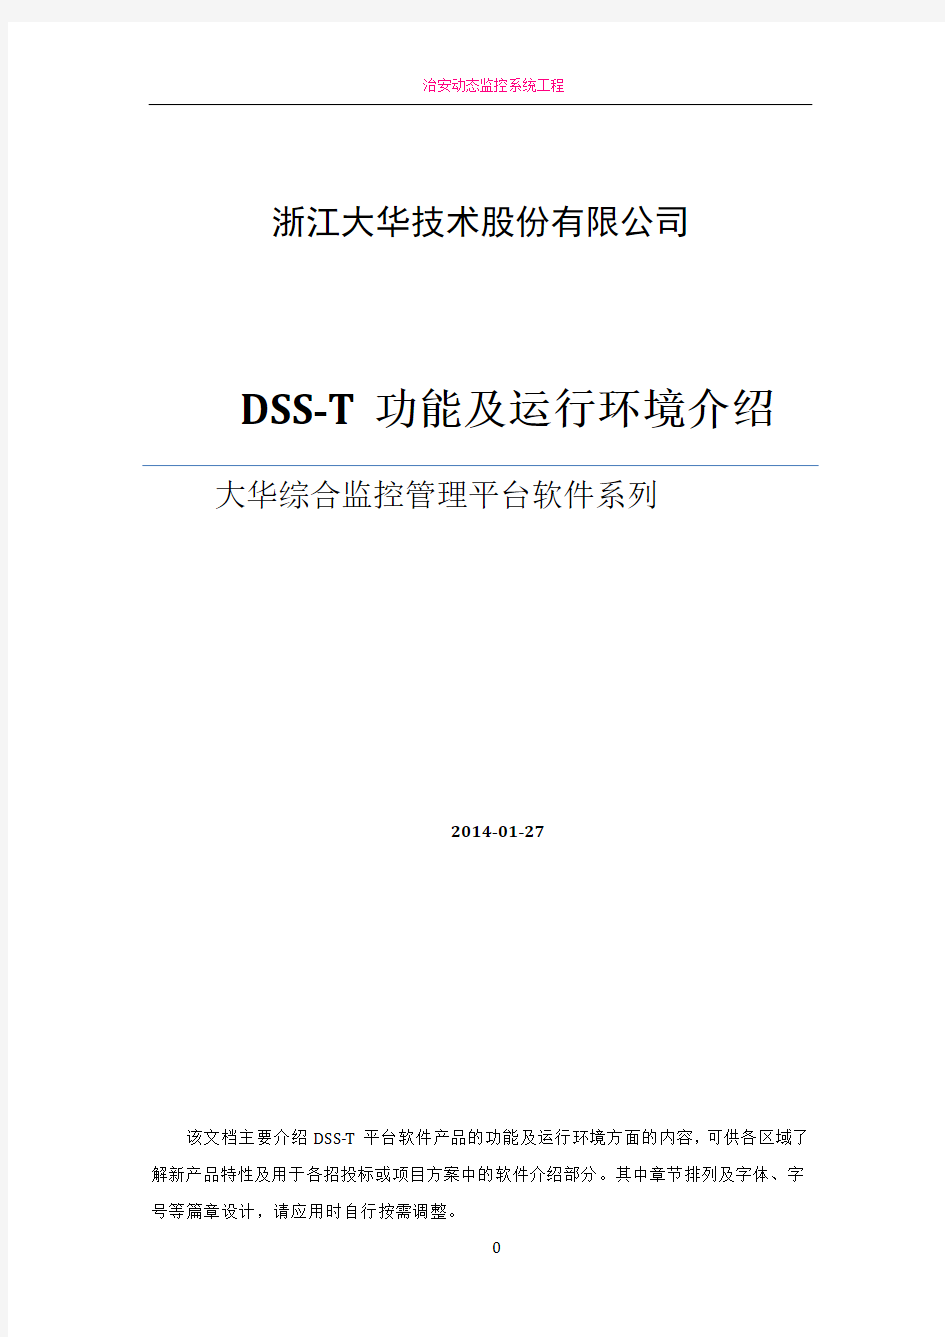 大华综合监控管理平台软件(DSS-T)功能和环境描述(方案用)